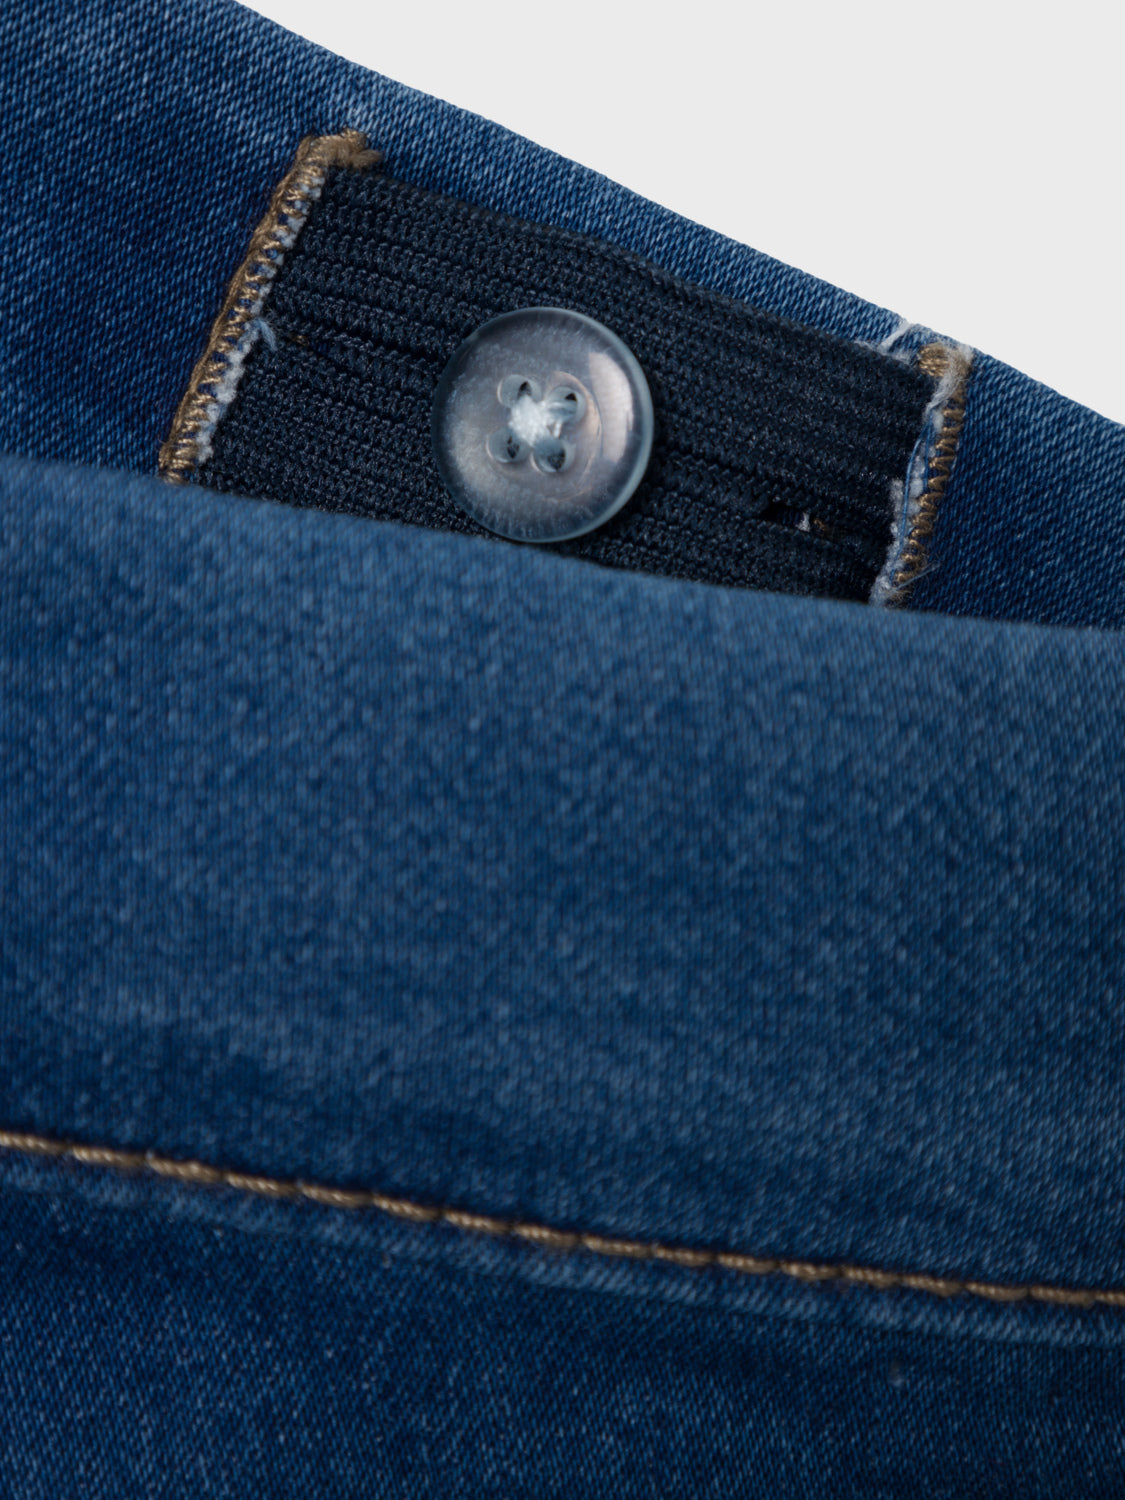 NKMTHEO Jeans - Denim Blue – NAME IT Hjørring